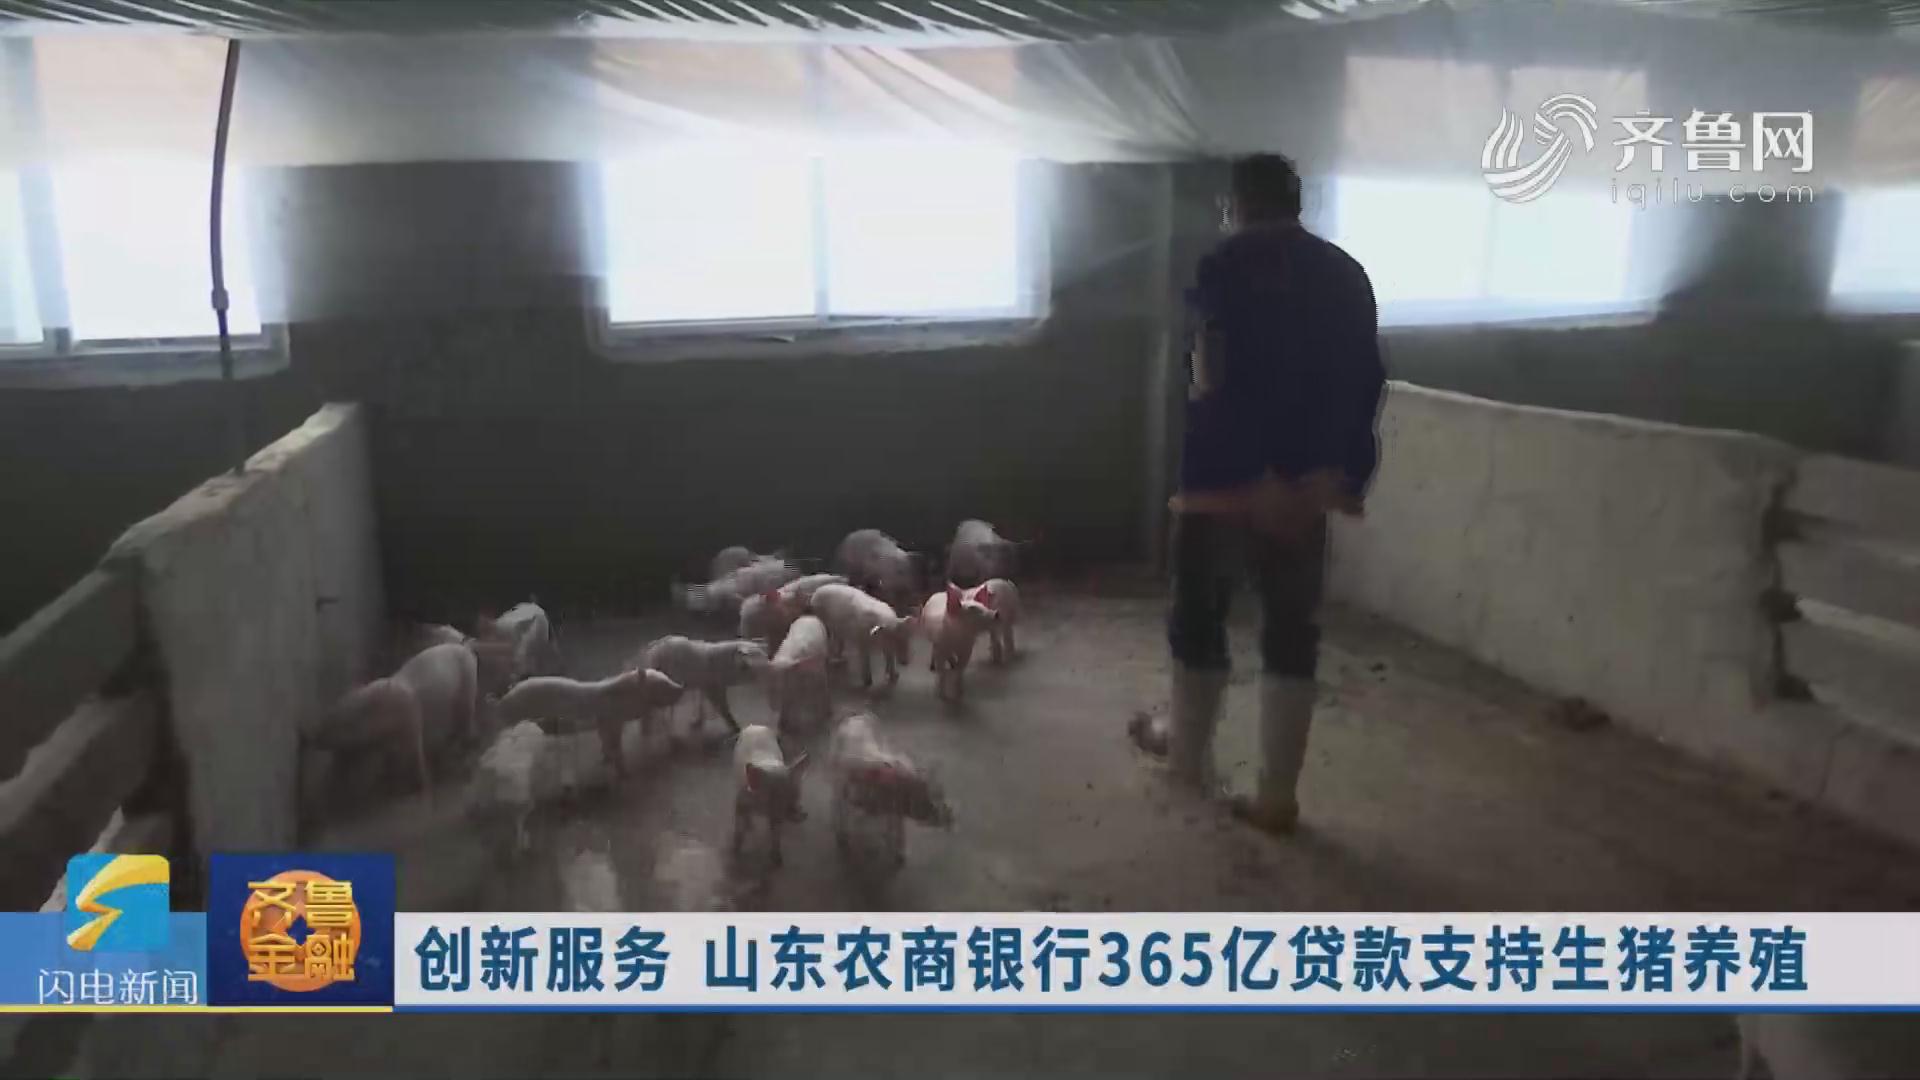 创新服务  山东农商银行365亿贷款支持生猪养殖《齐鲁金融》20191118播出